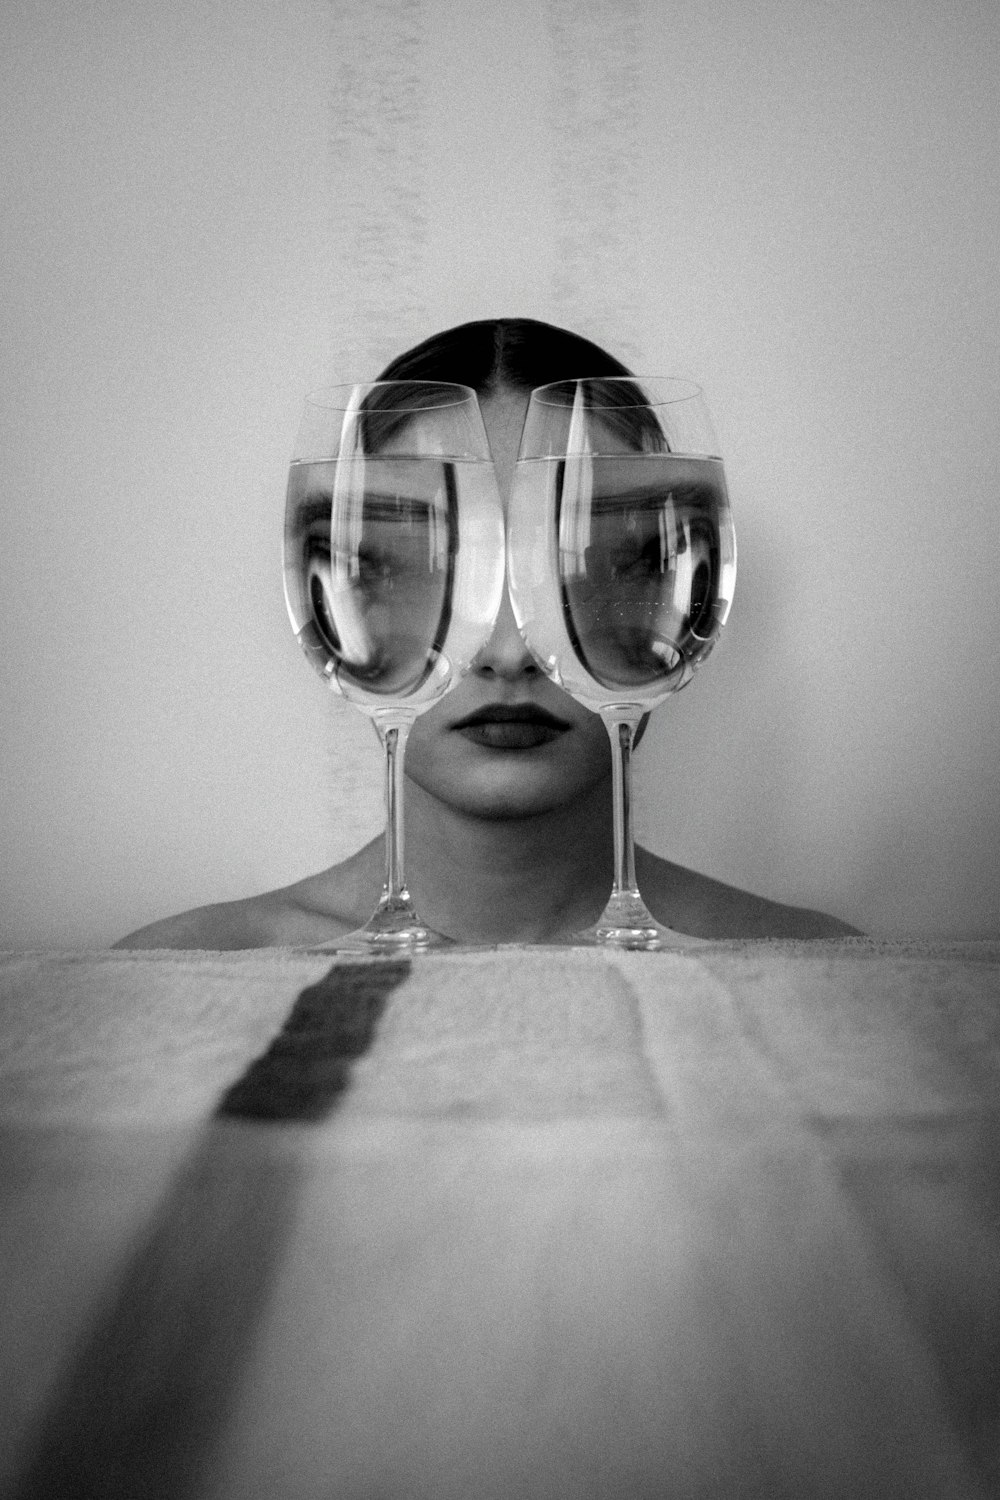 Une femme avec trois verres de vin devant son visage